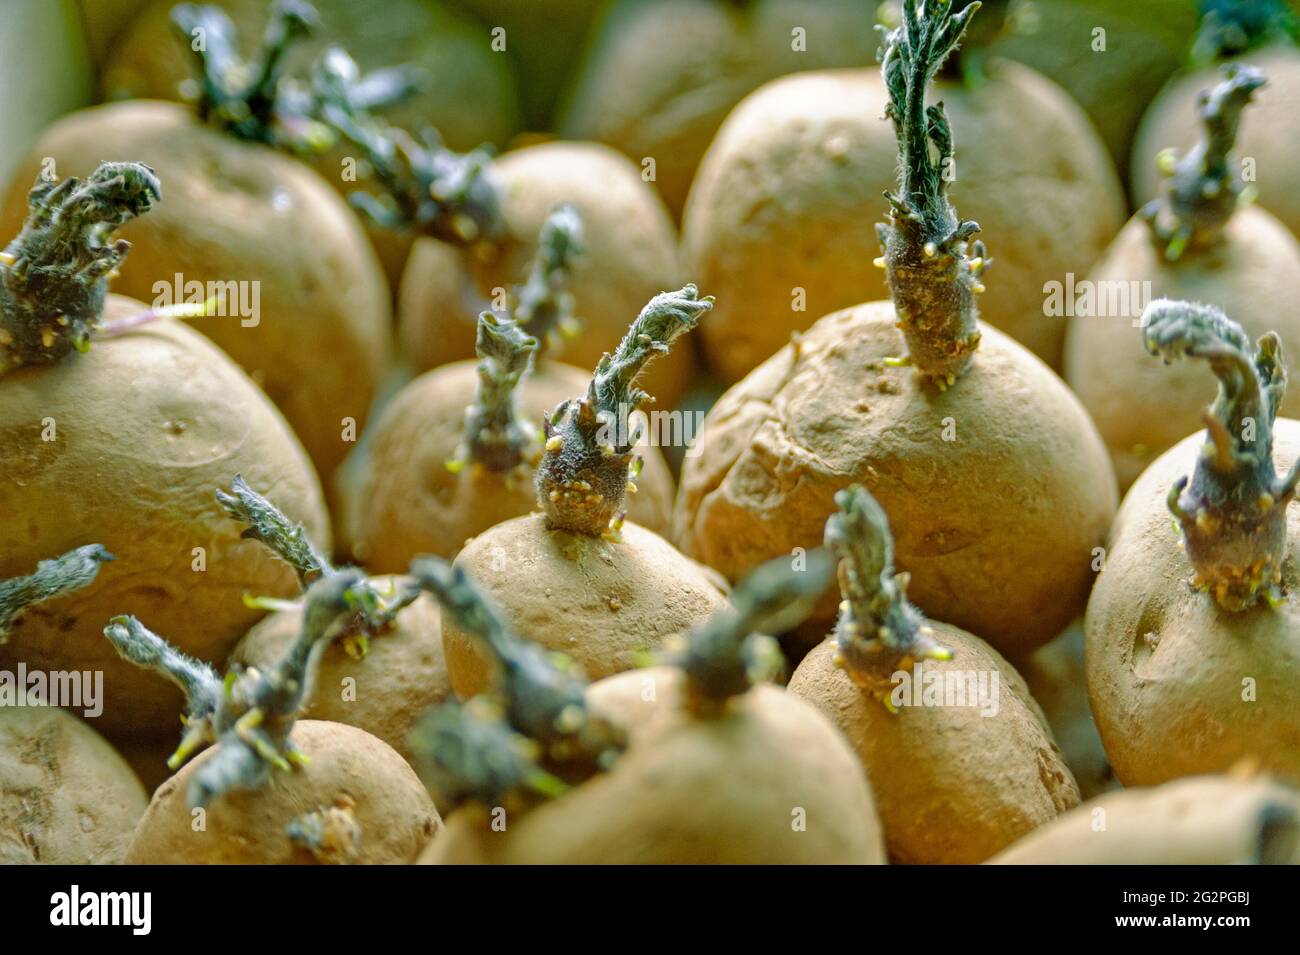 chitting potatoes Stock Photo